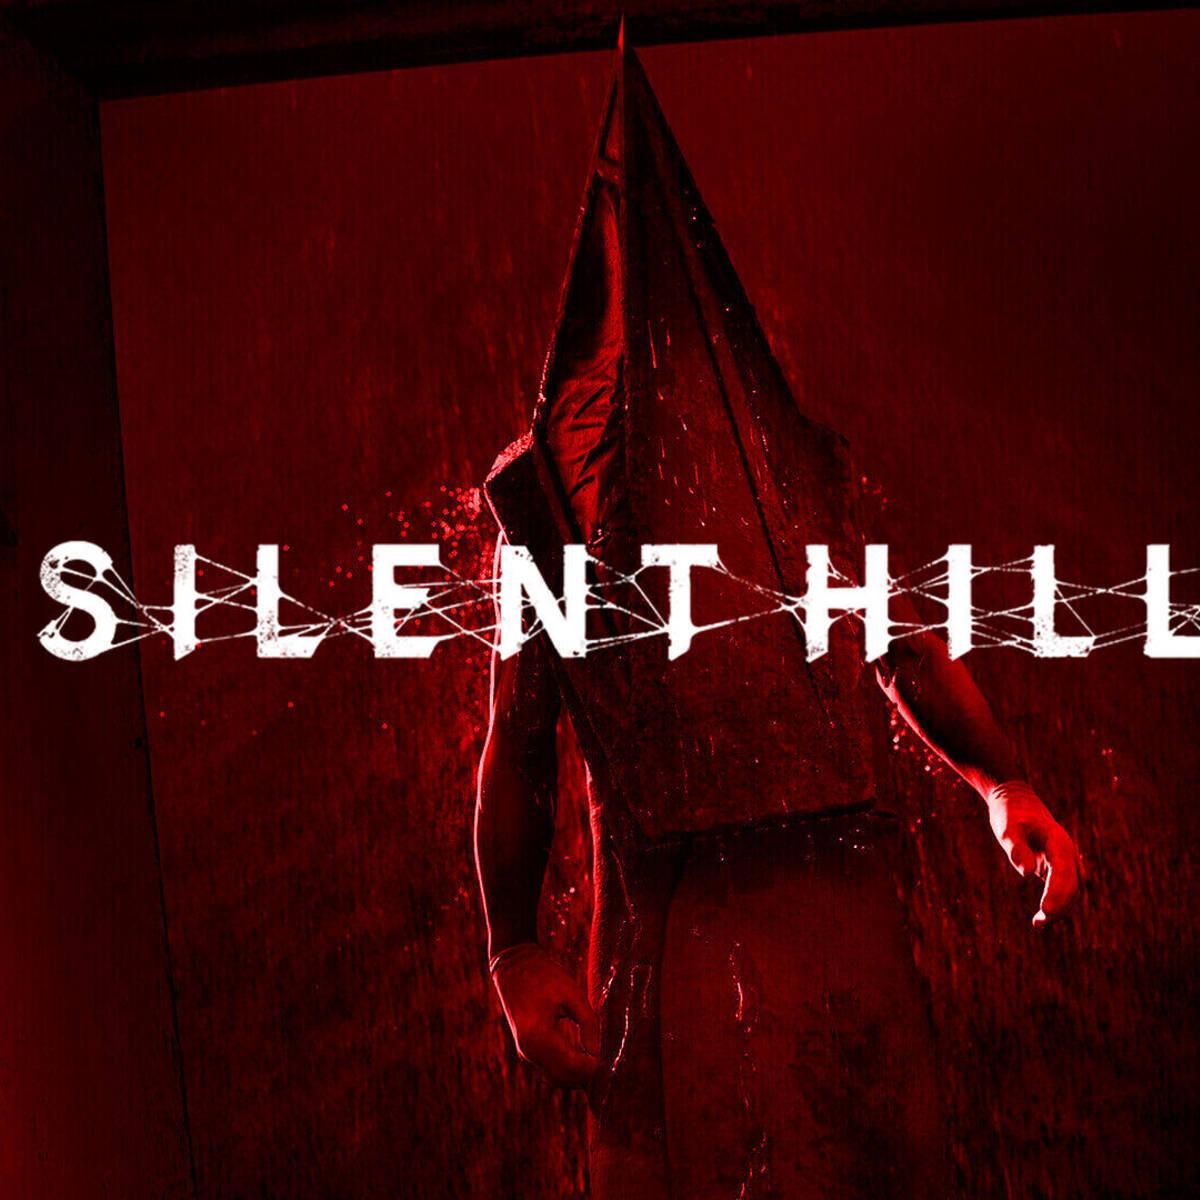 Anunciamos el remake de Silent Hill 2, los primeros detalles sobre